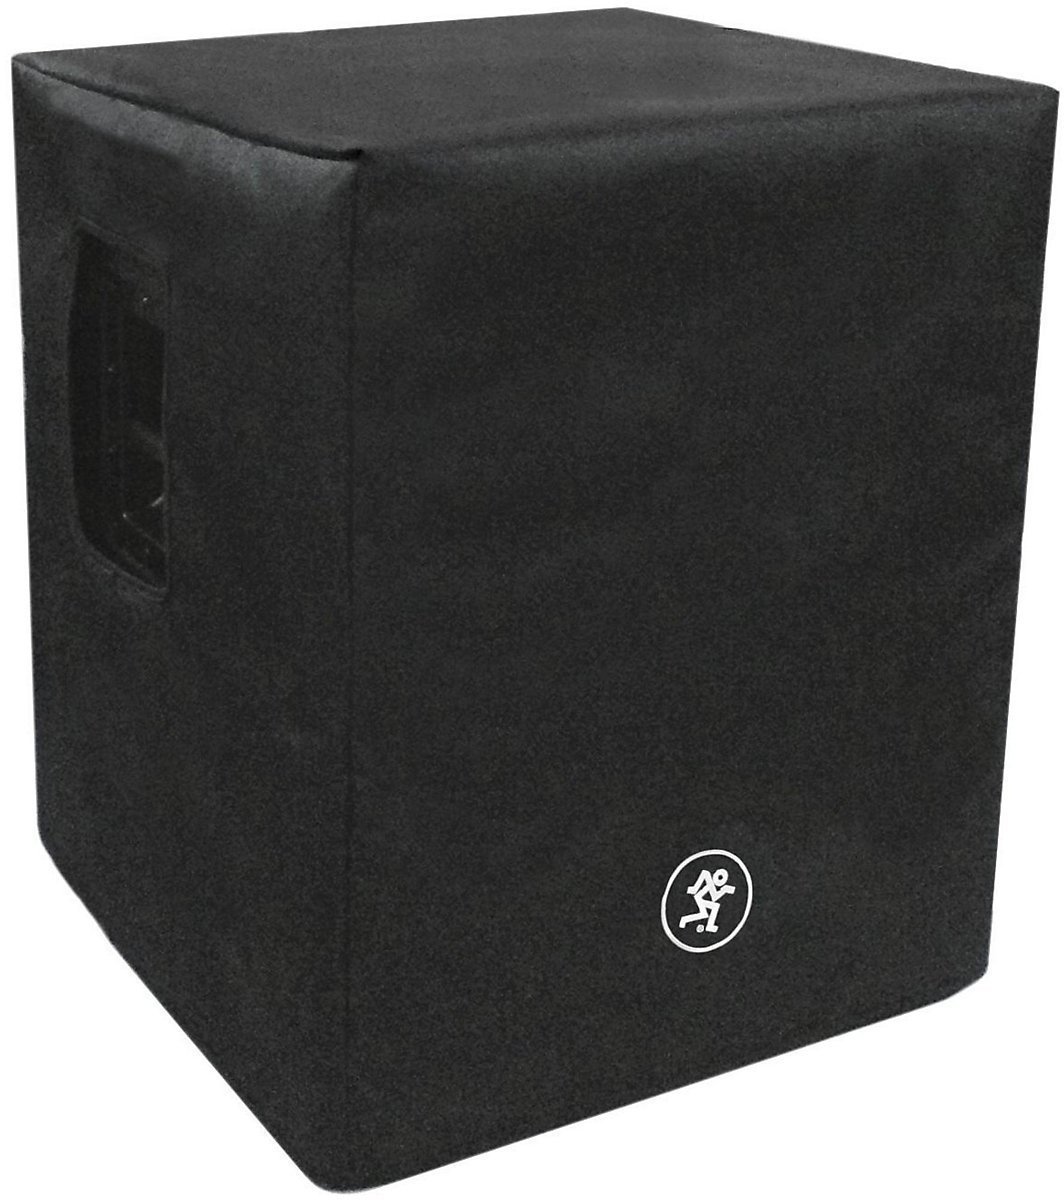 Bag / Case for Audio Equipment Mackie Thump18S Speaker Cover